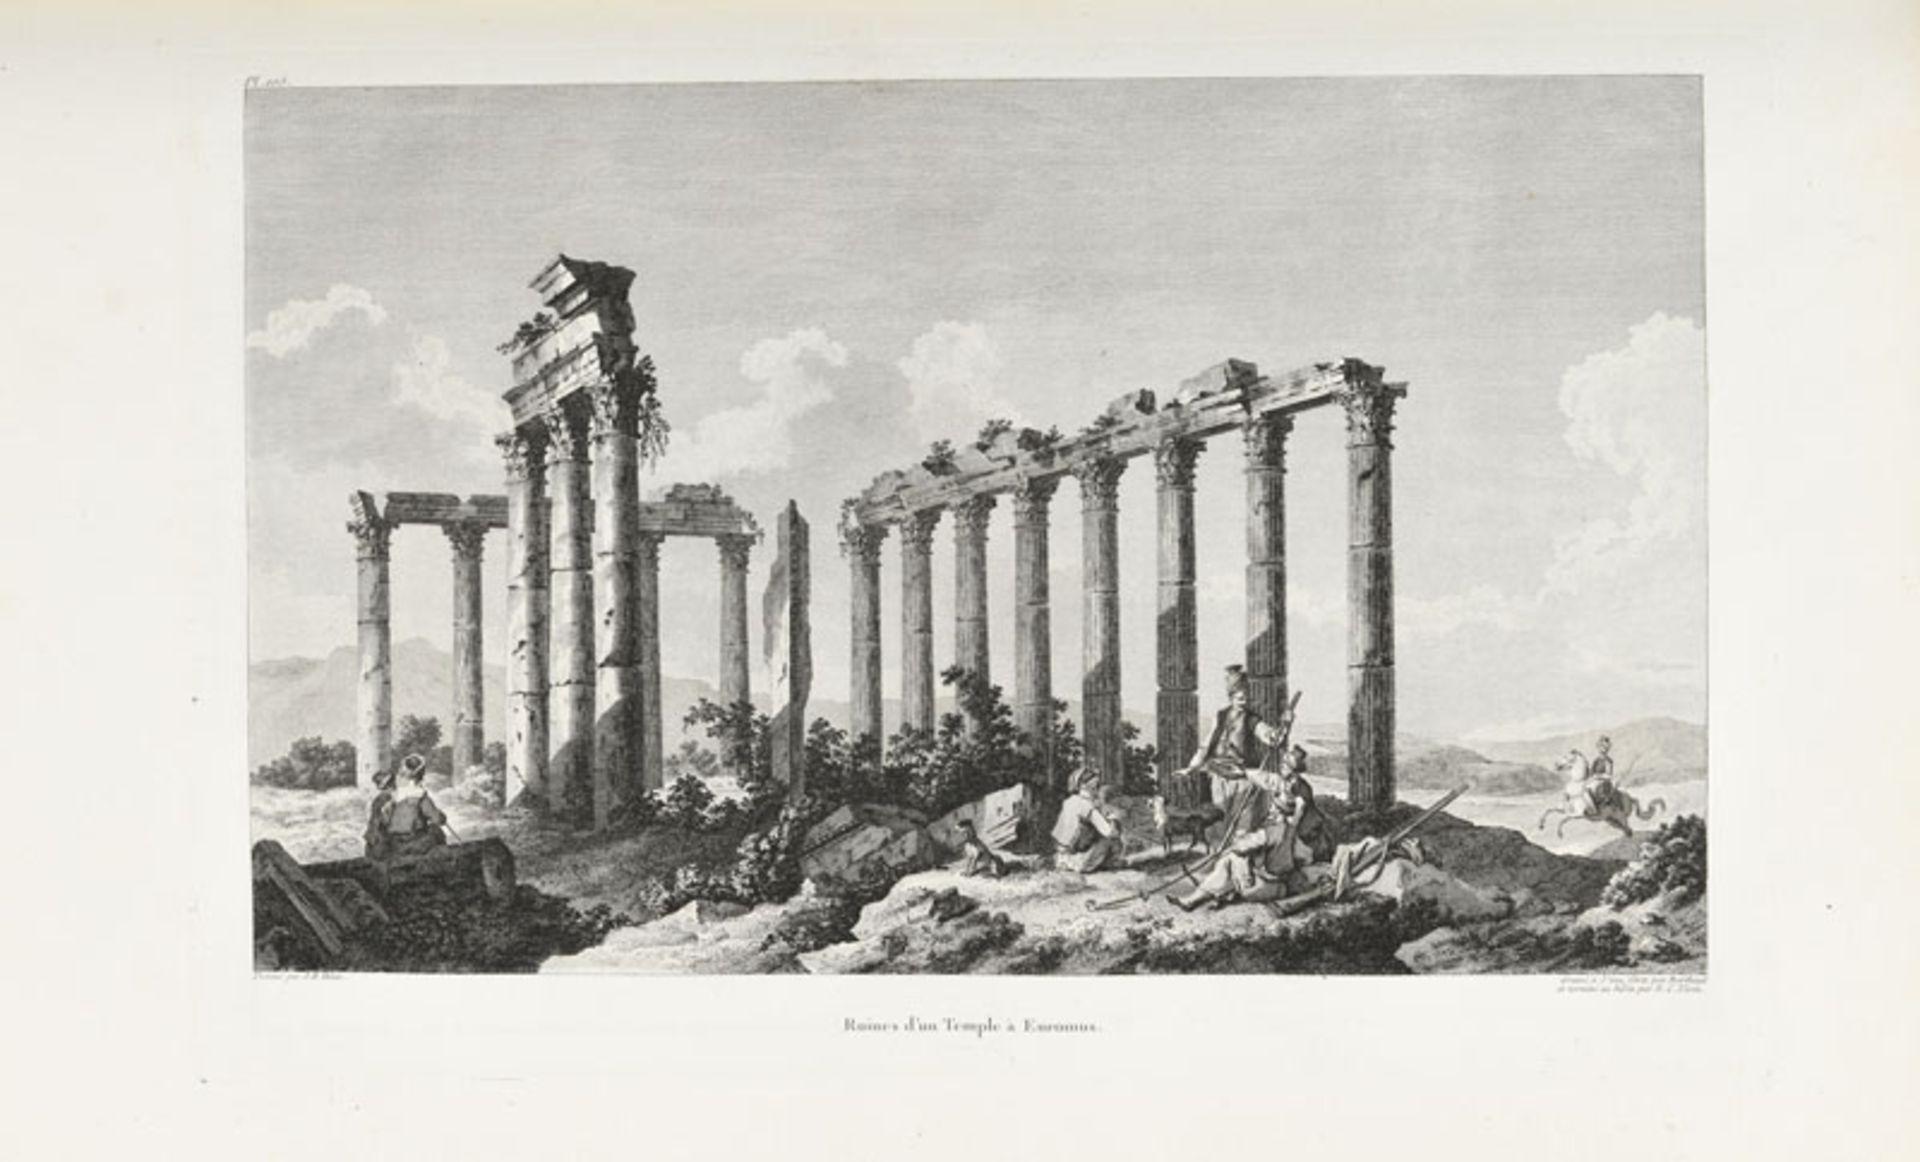 VOYAGE CHOISEUL-GOUFFIER. Voyage pittoresque de la Grèce. Paris, J. J. Blaise, 1782. 2 vol. in-folio